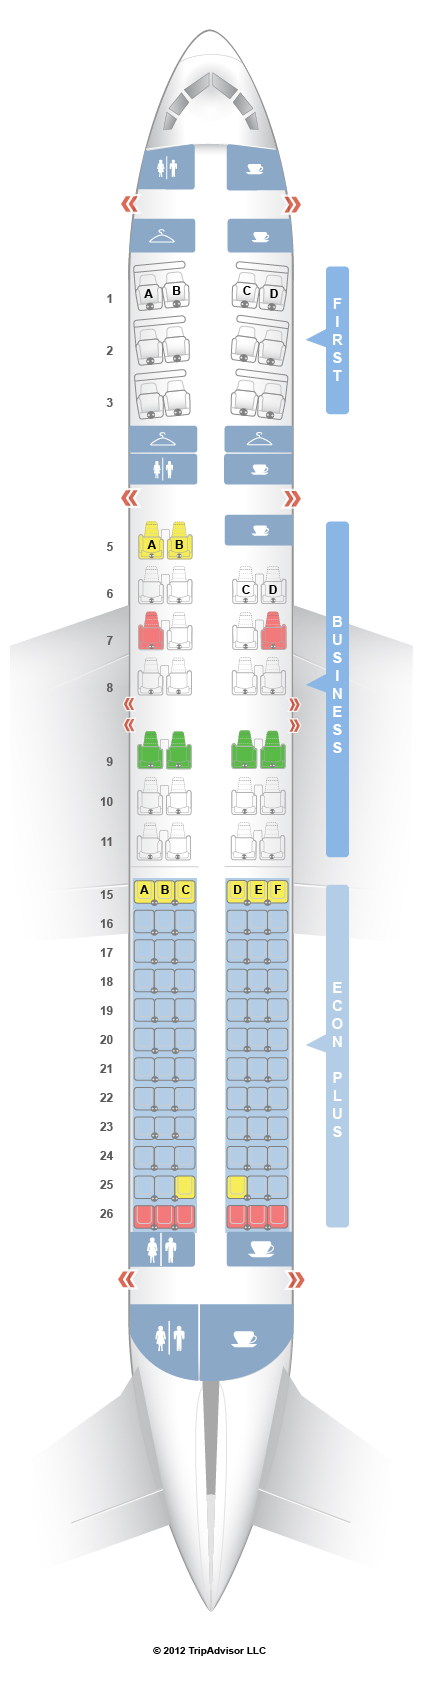 seat mapa